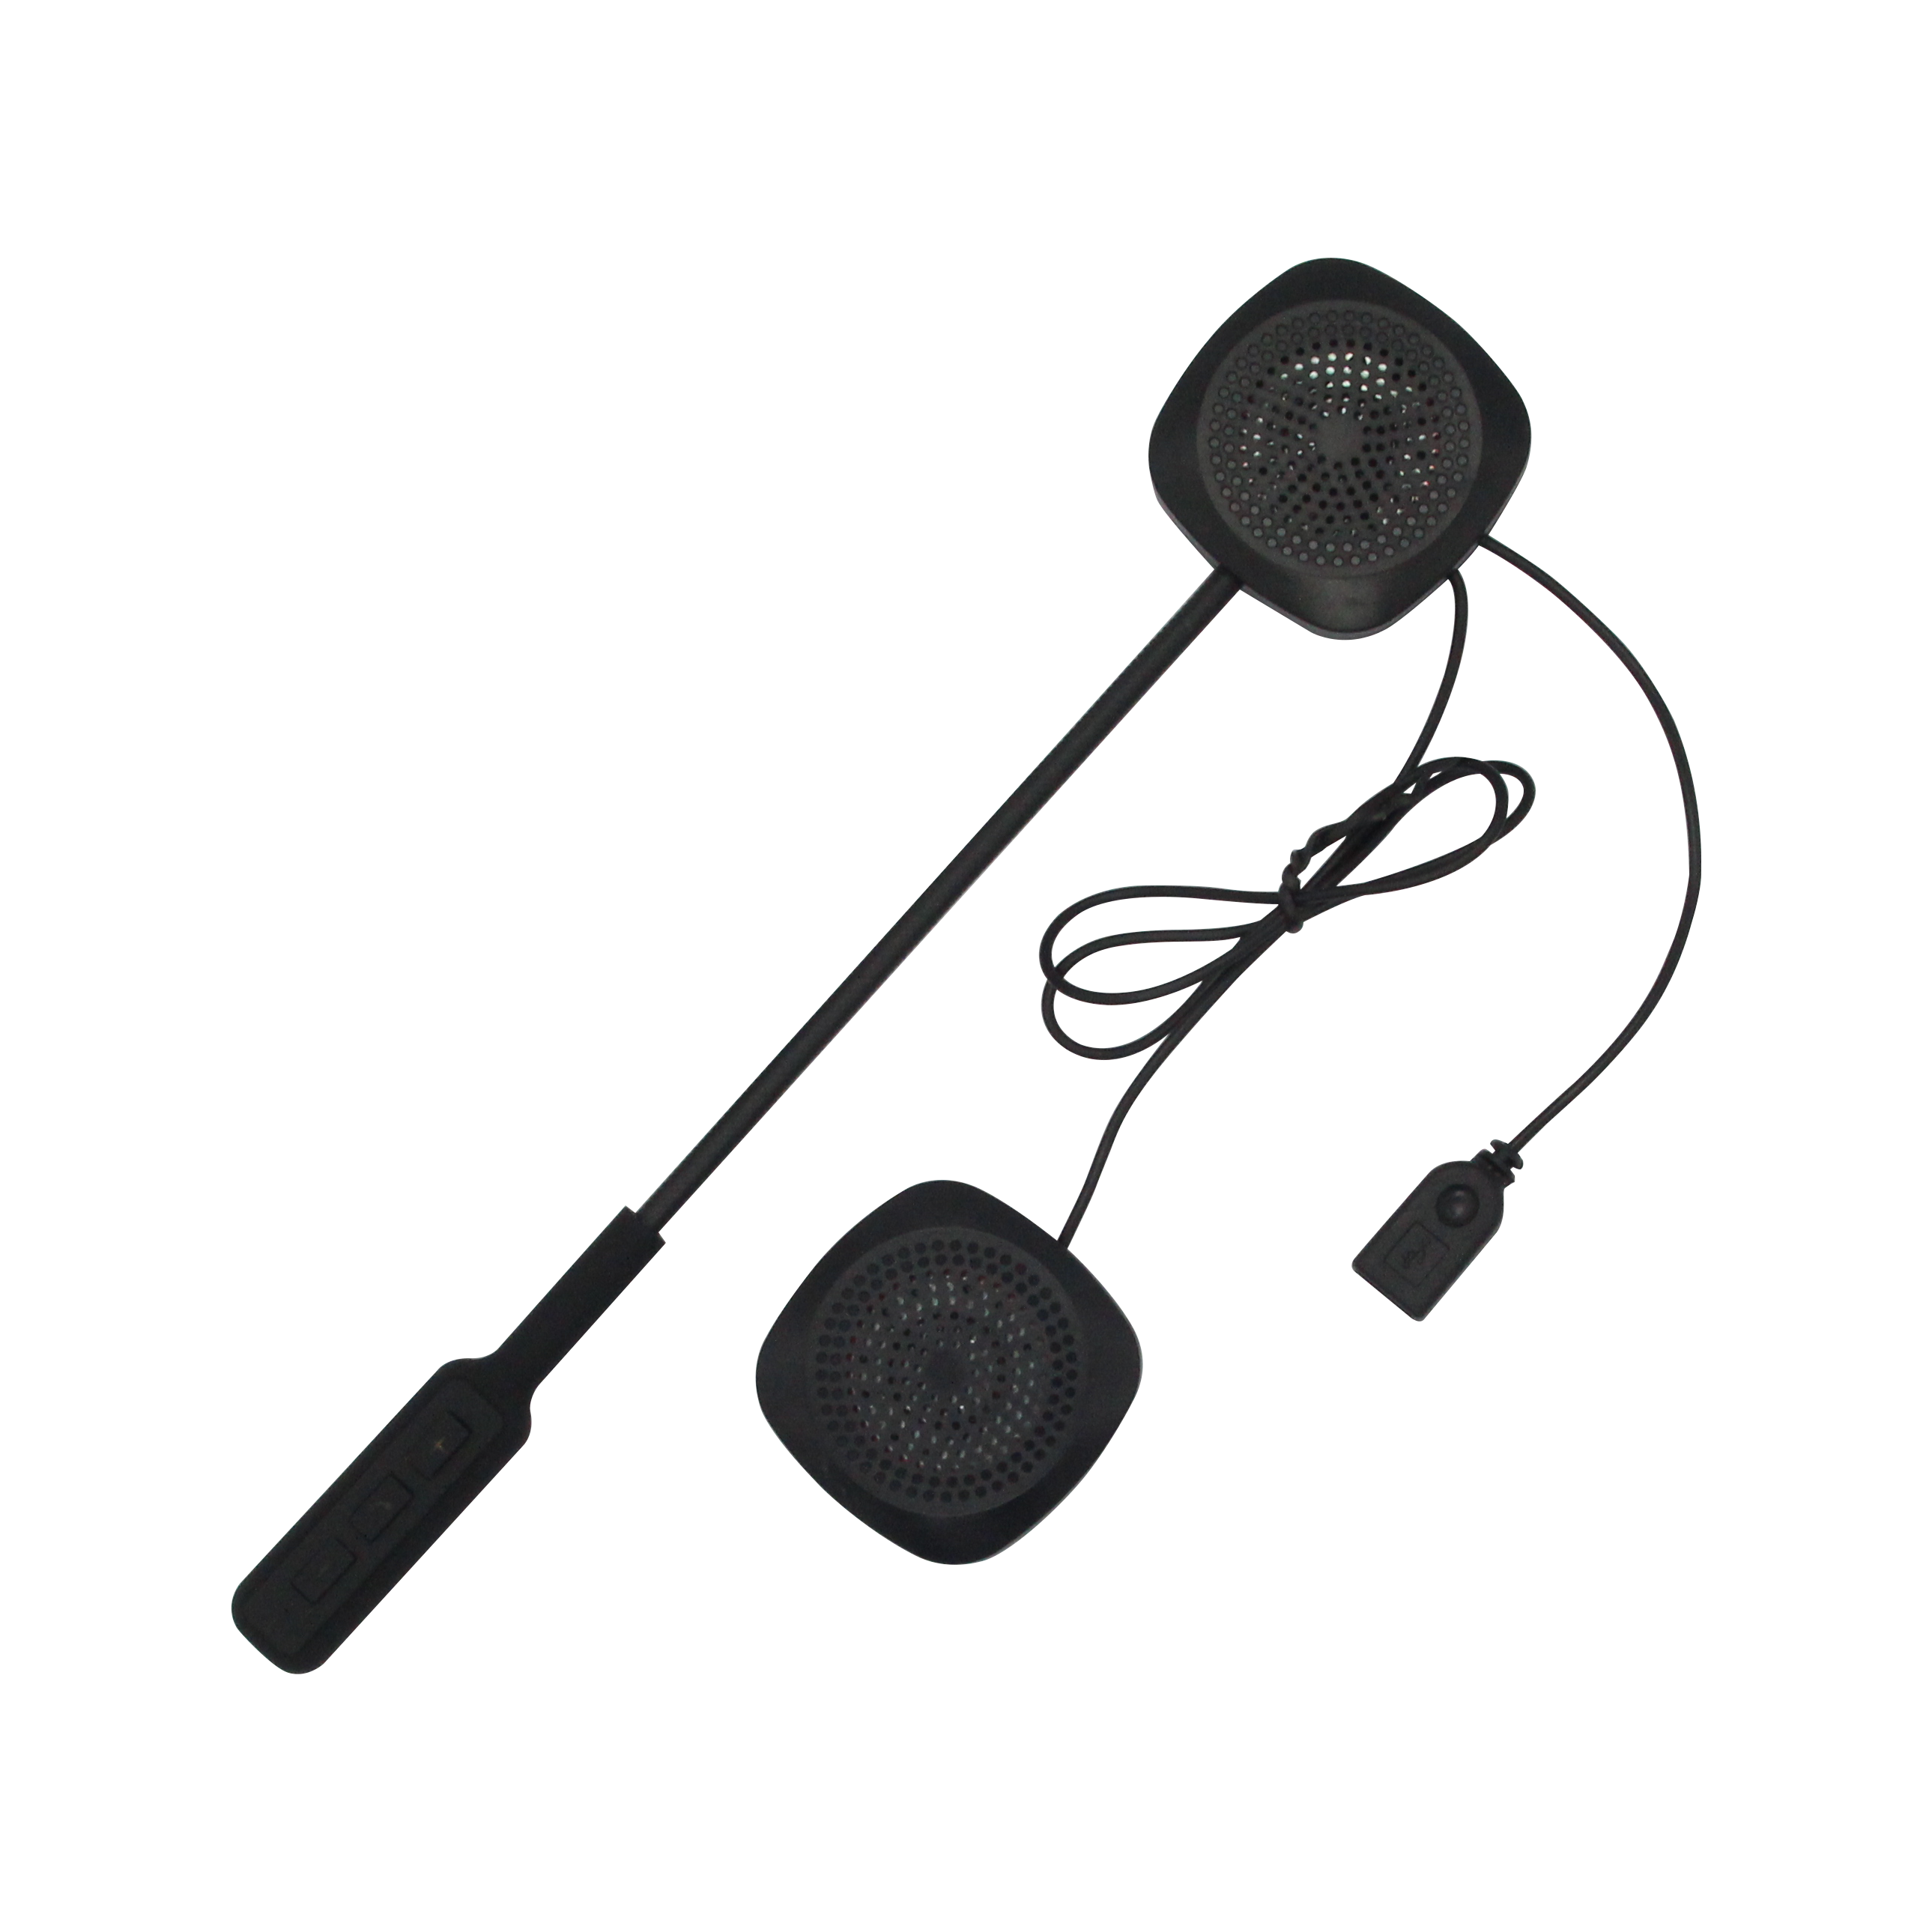 Bluetooth Moto casque casque sans fil mains libres stéréo écouteur Moto Moto casque casque MP3 haut-parleur pour voiture